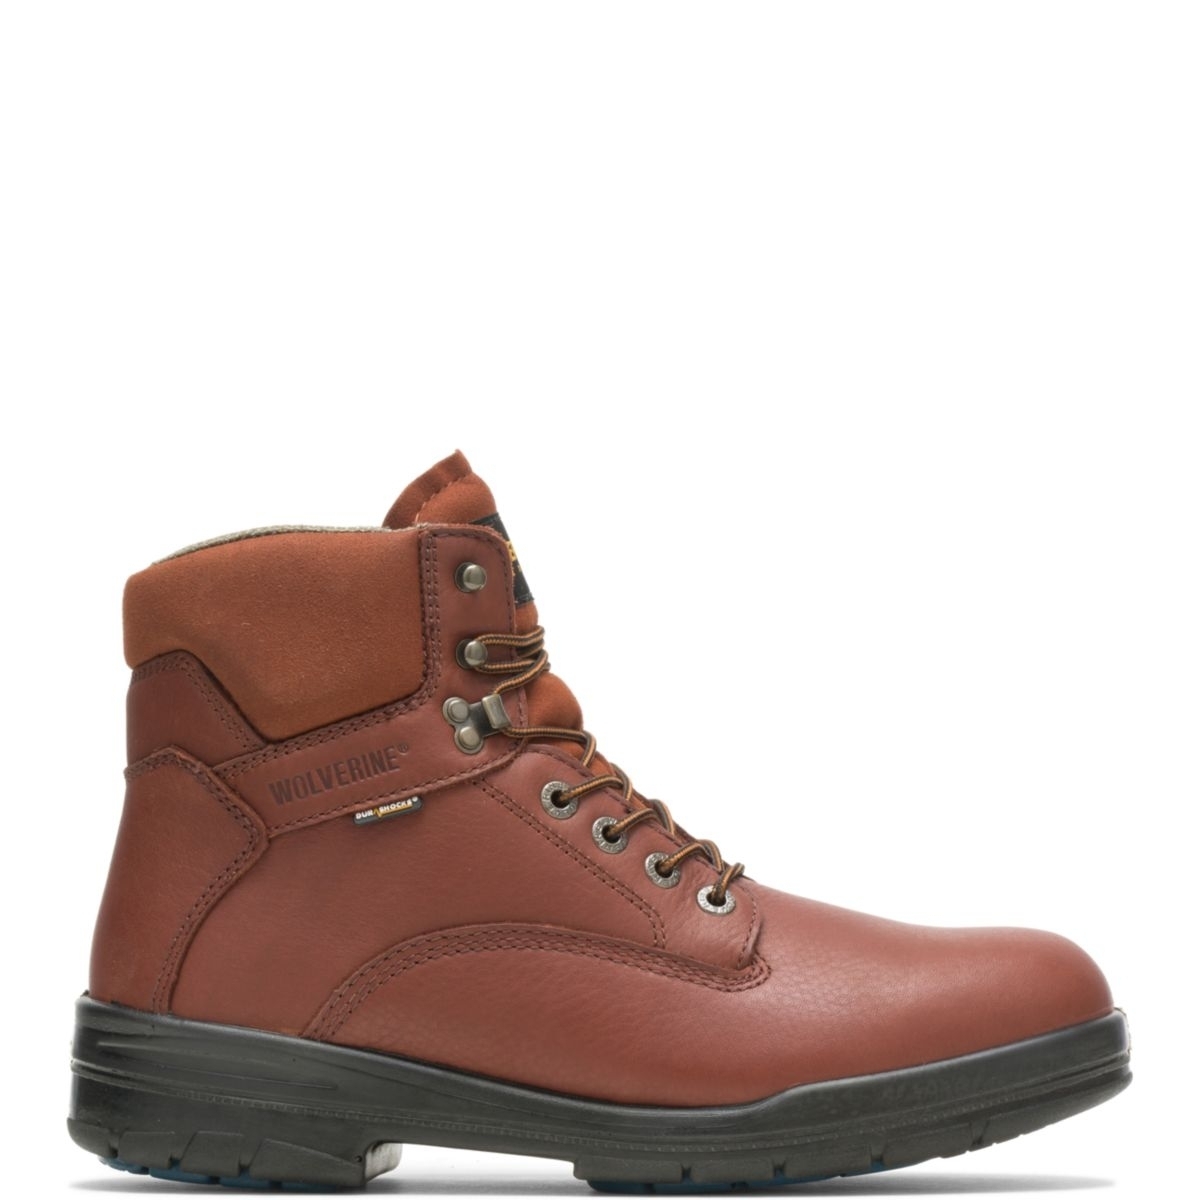 WOLVERINE Men's 6 DuraShocksÂ® Steel Toe Direct-Attach Work Boot Brown - W03120 BROWN - BROWN, 10 Wide